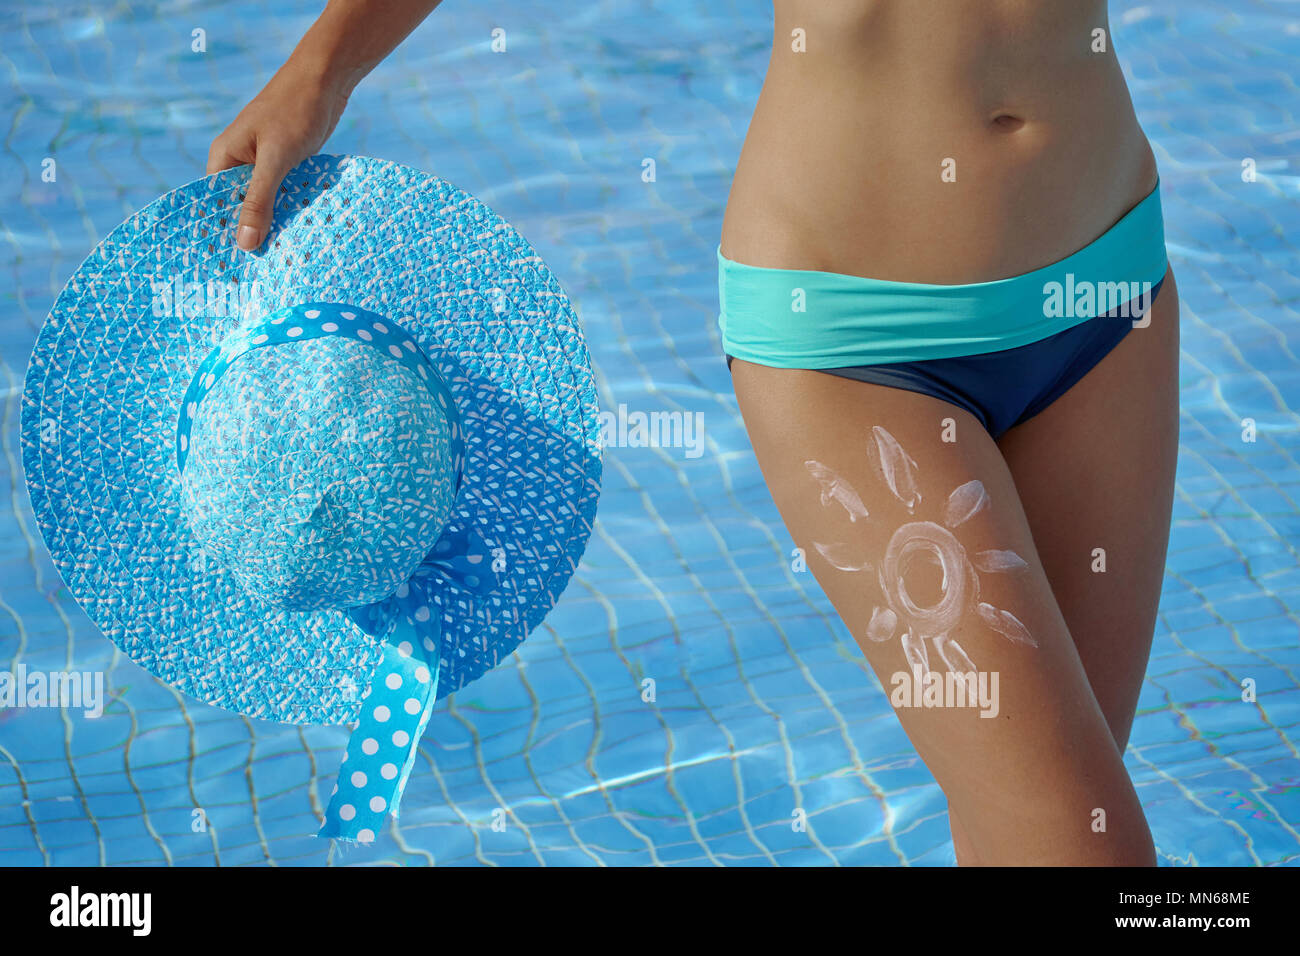 Protezione solare e belle gambe femmina nella piscina immagine concettuale di vacanza Foto Stock